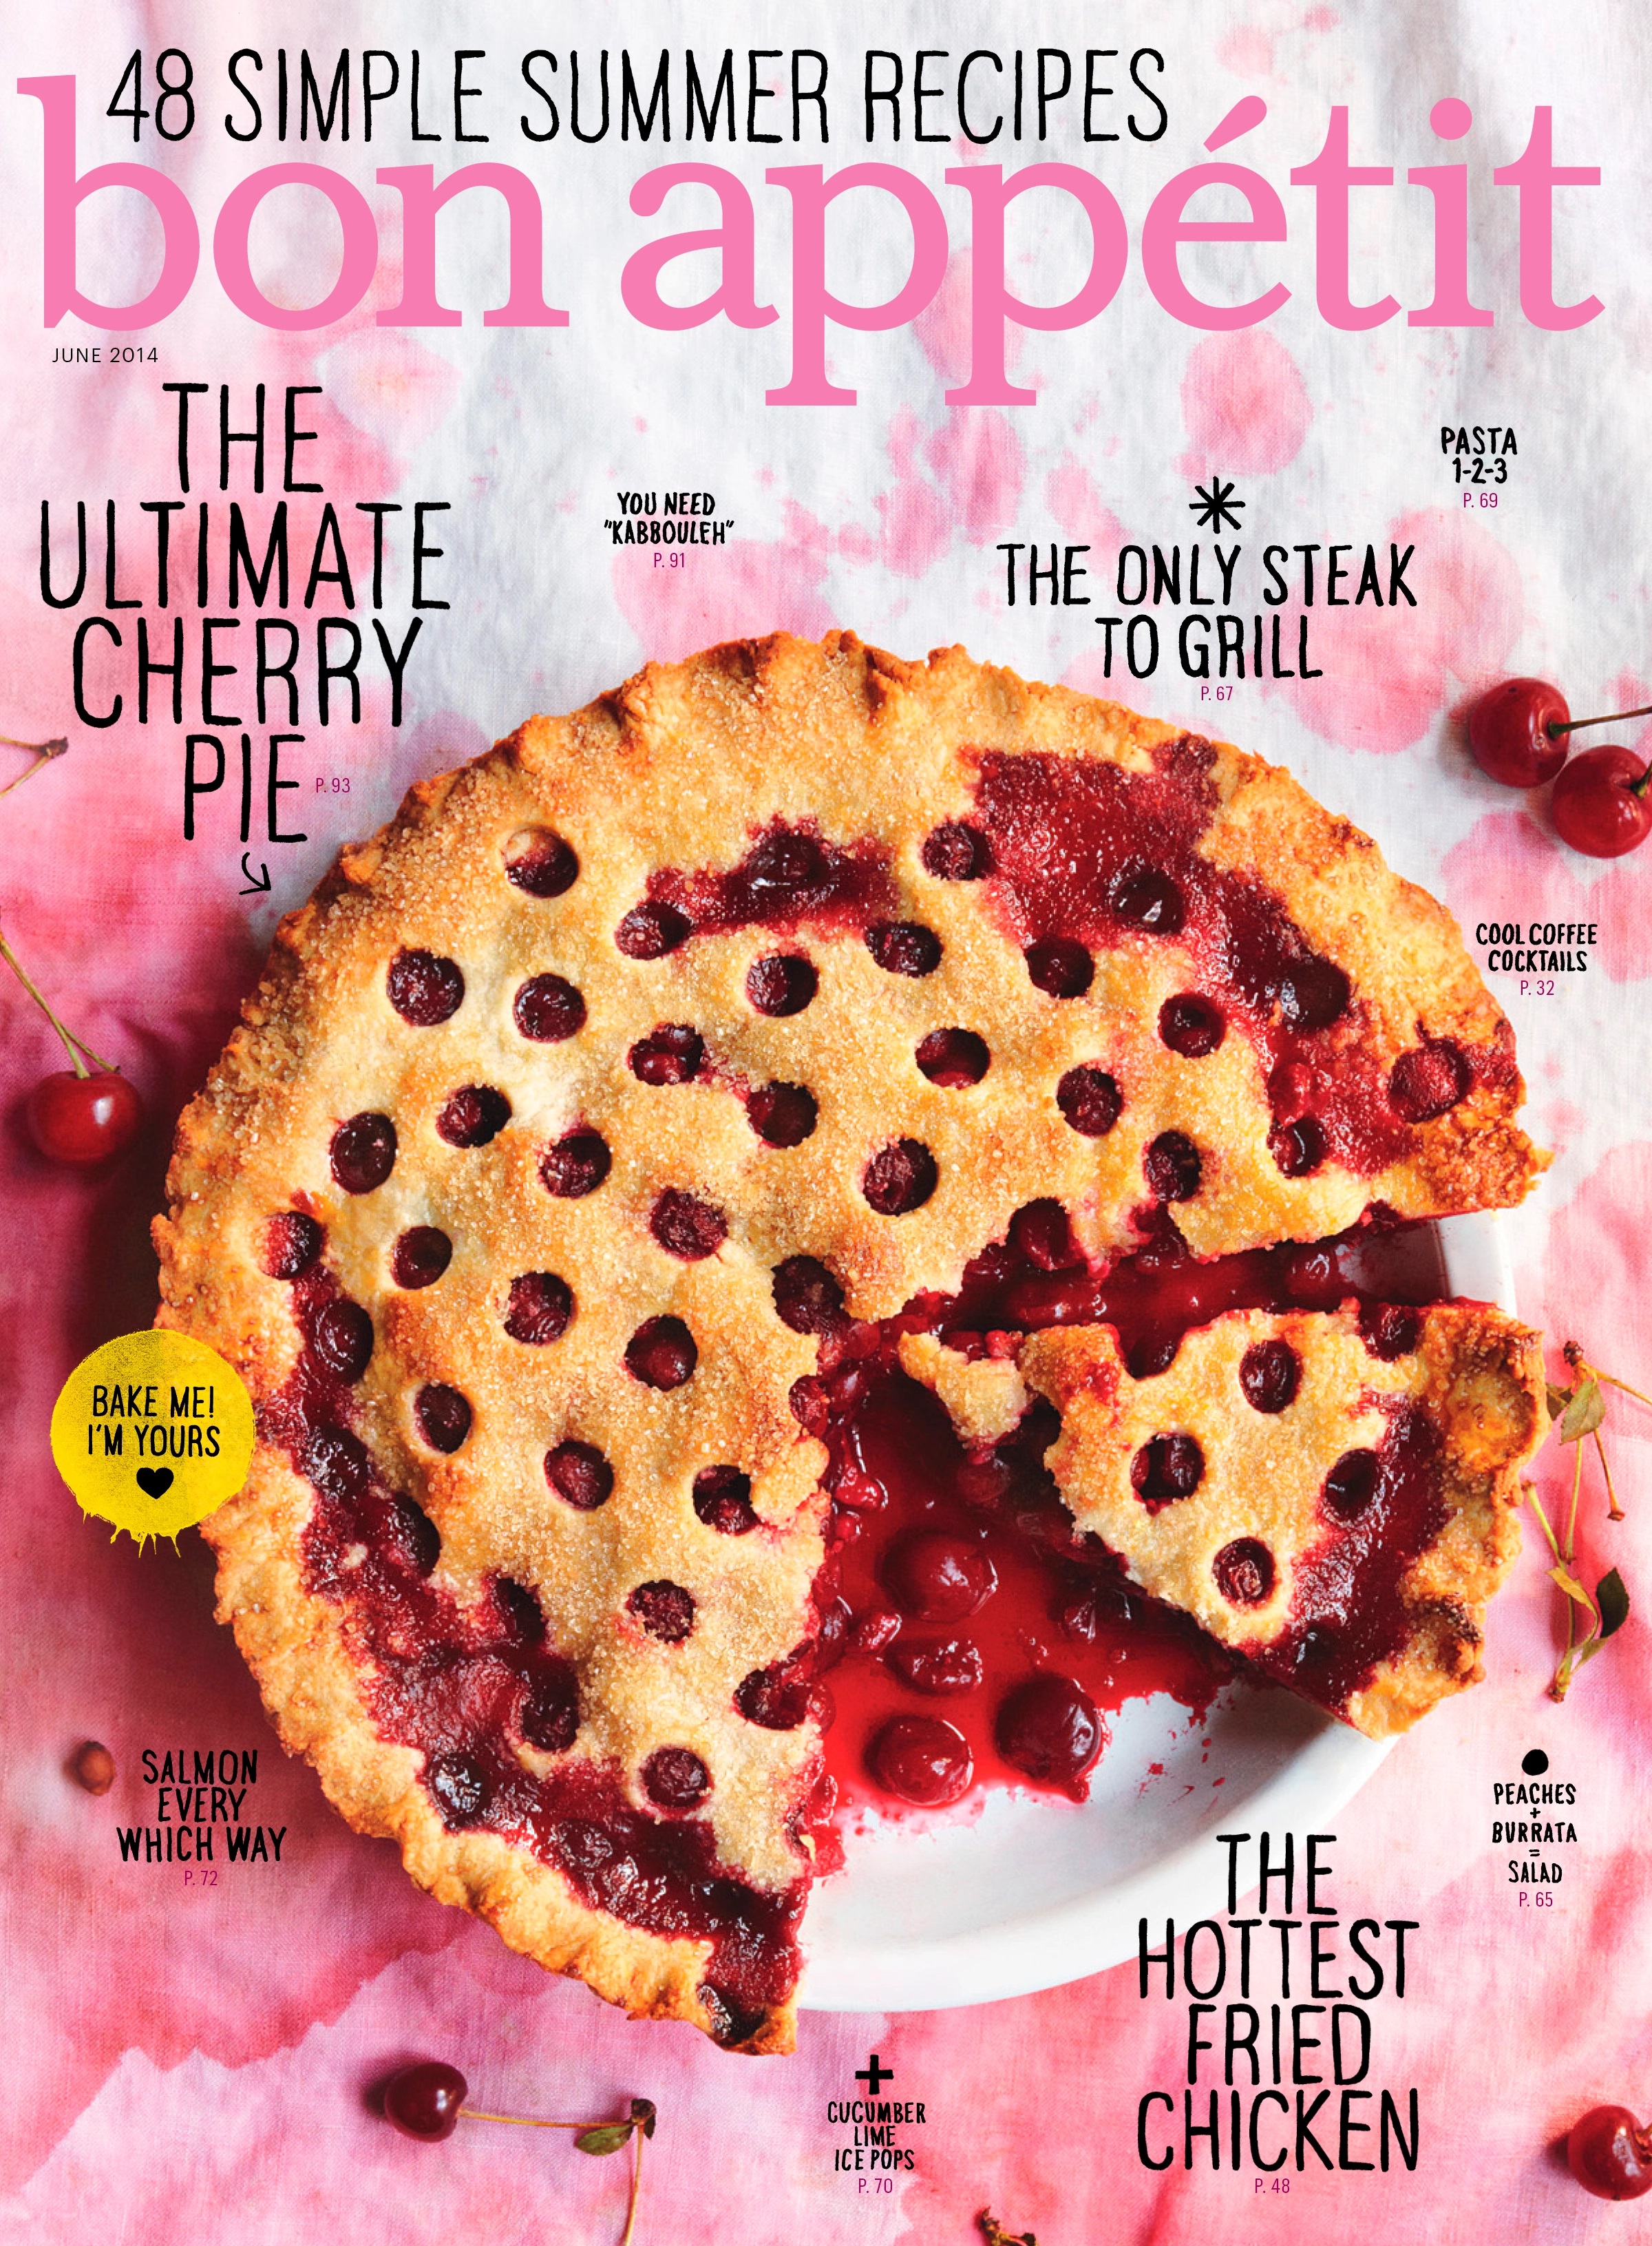 Bon Appetit-June 2014, "The Ultimate Cherry Pie"